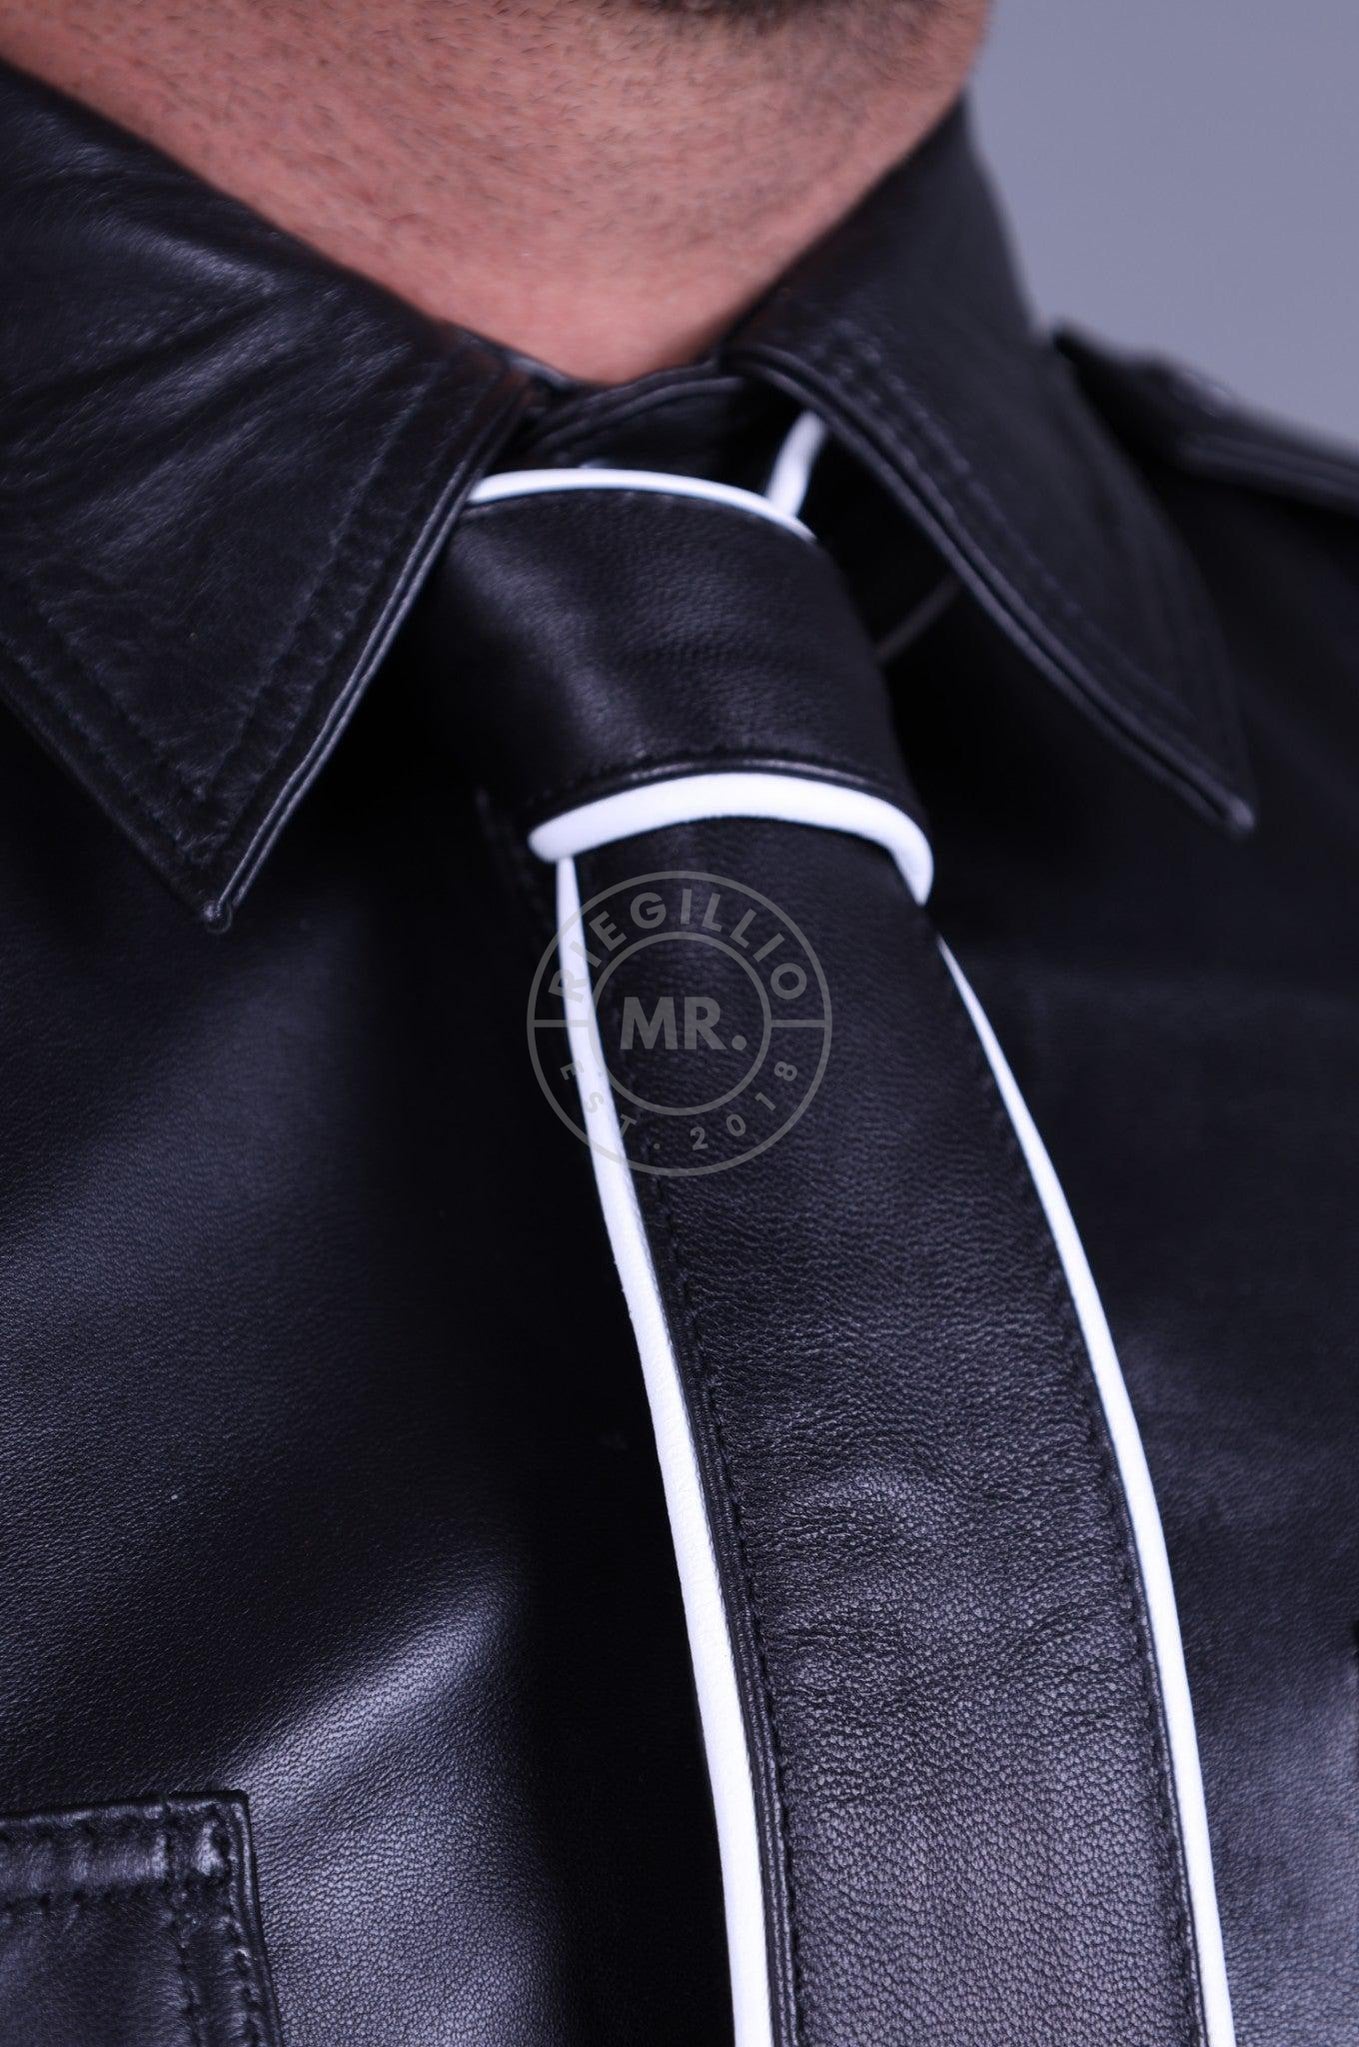 Black Leather Tie - WHITE Piping-at MR. Riegillio